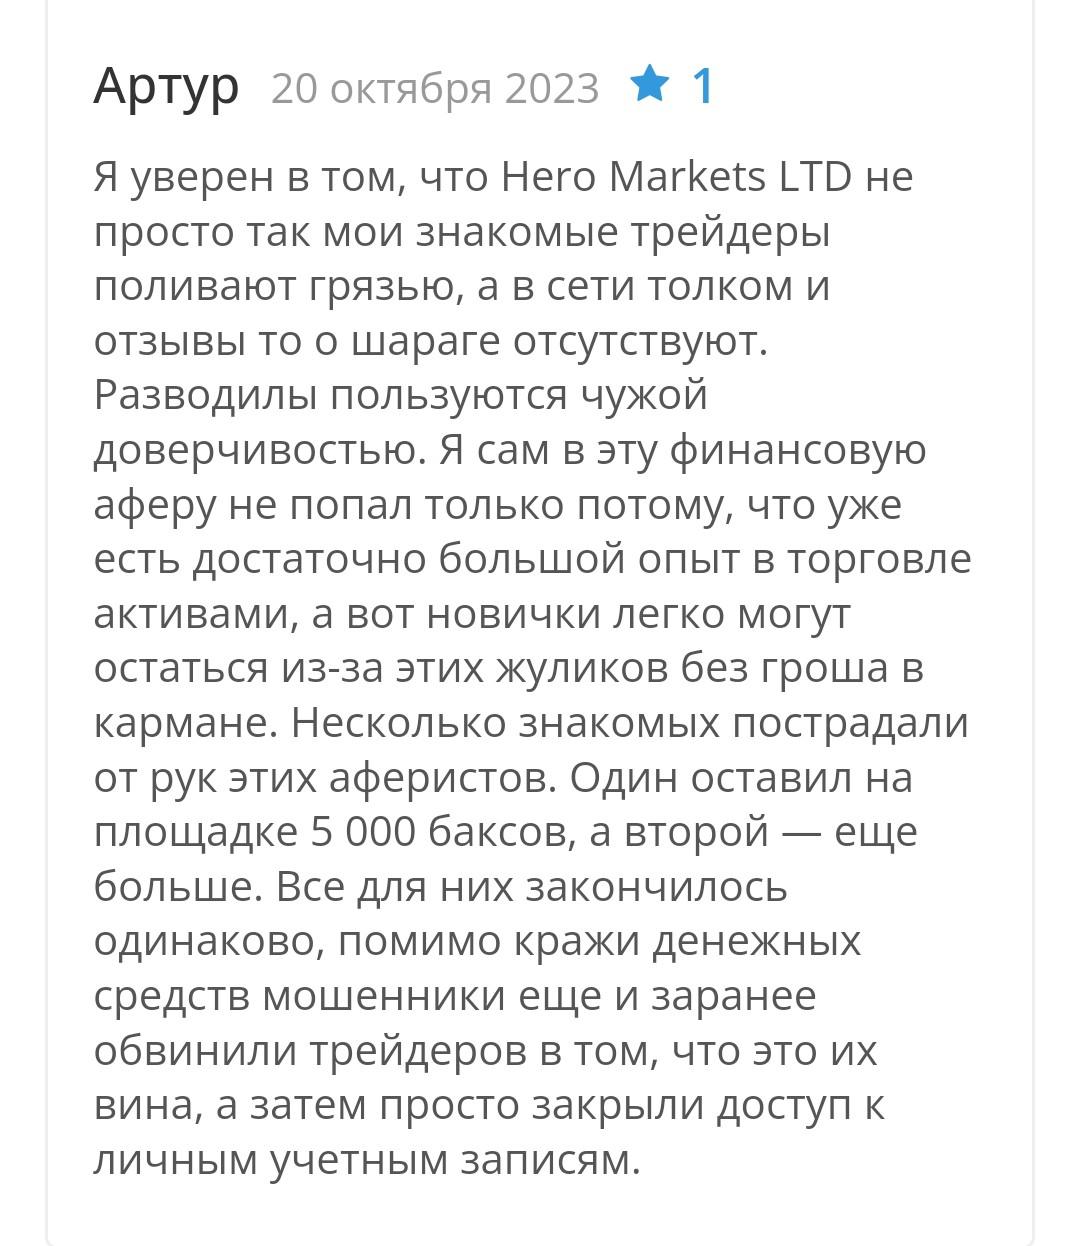 Hero markets ltd - отзывы